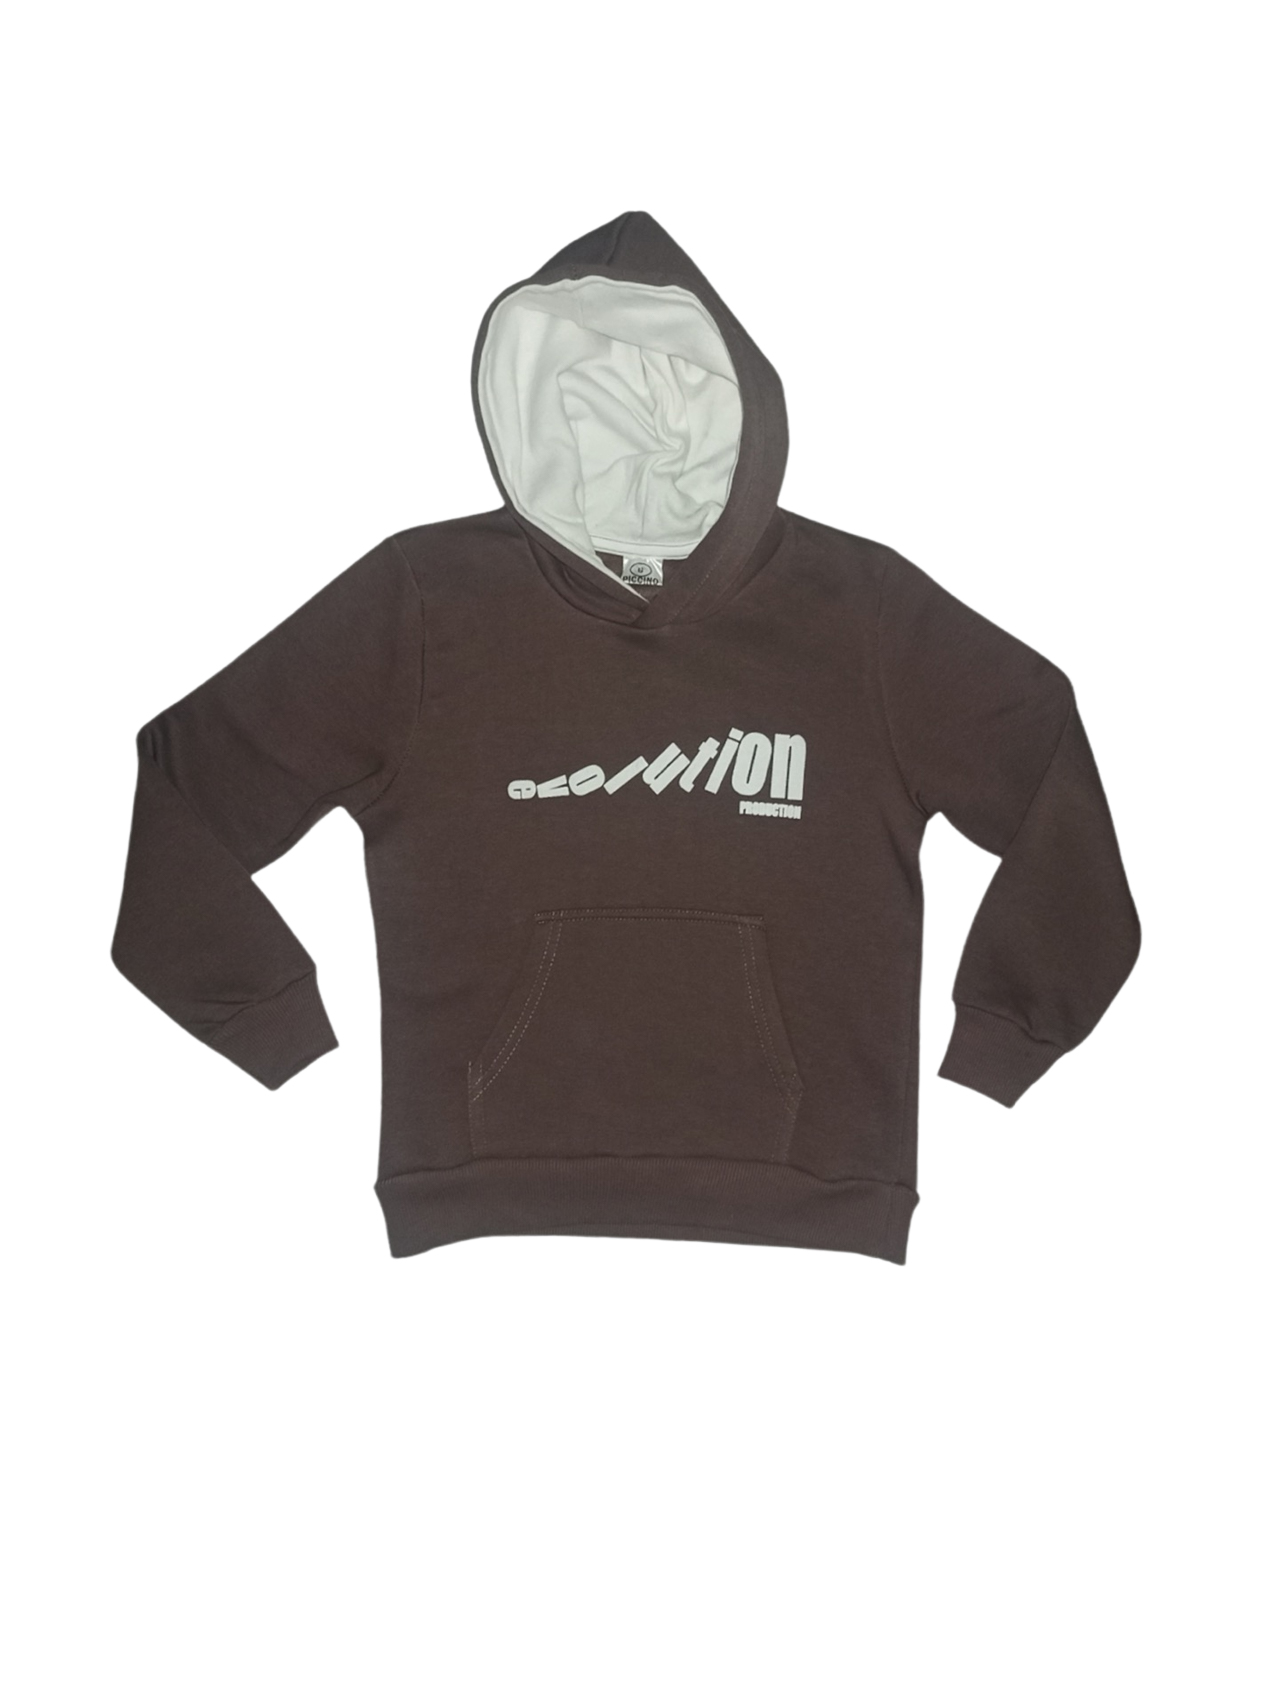 Boy's hoodie with hood code 22213